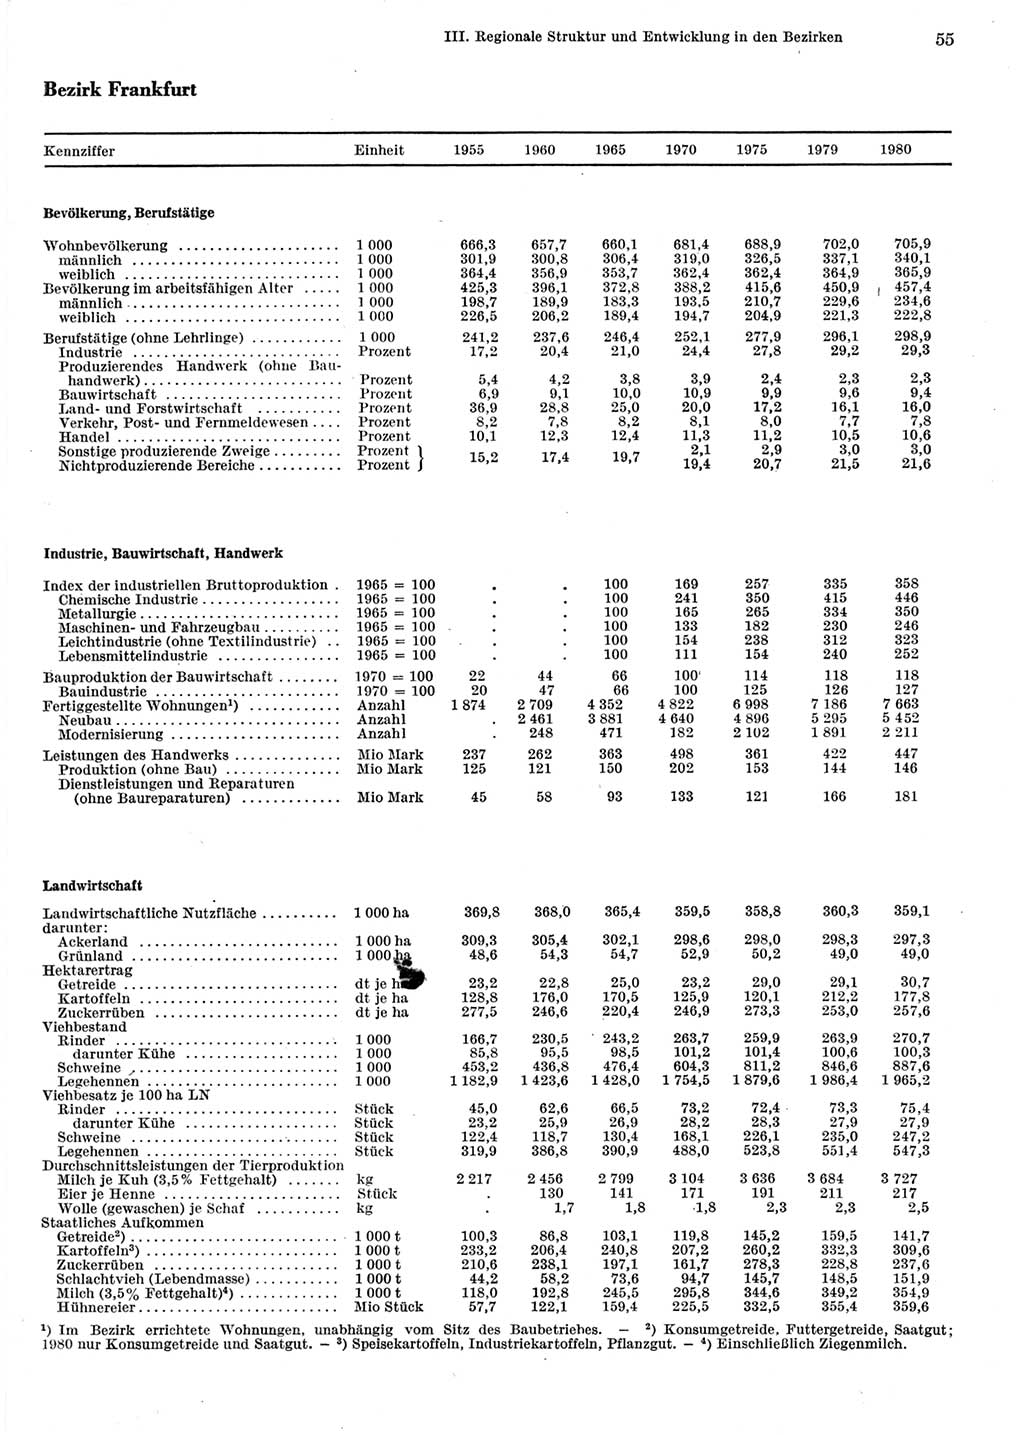 Statistisches Jahrbuch der Deutschen Demokratischen Republik (DDR) 1981, Seite 55 (Stat. Jb. DDR 1981, S. 55)